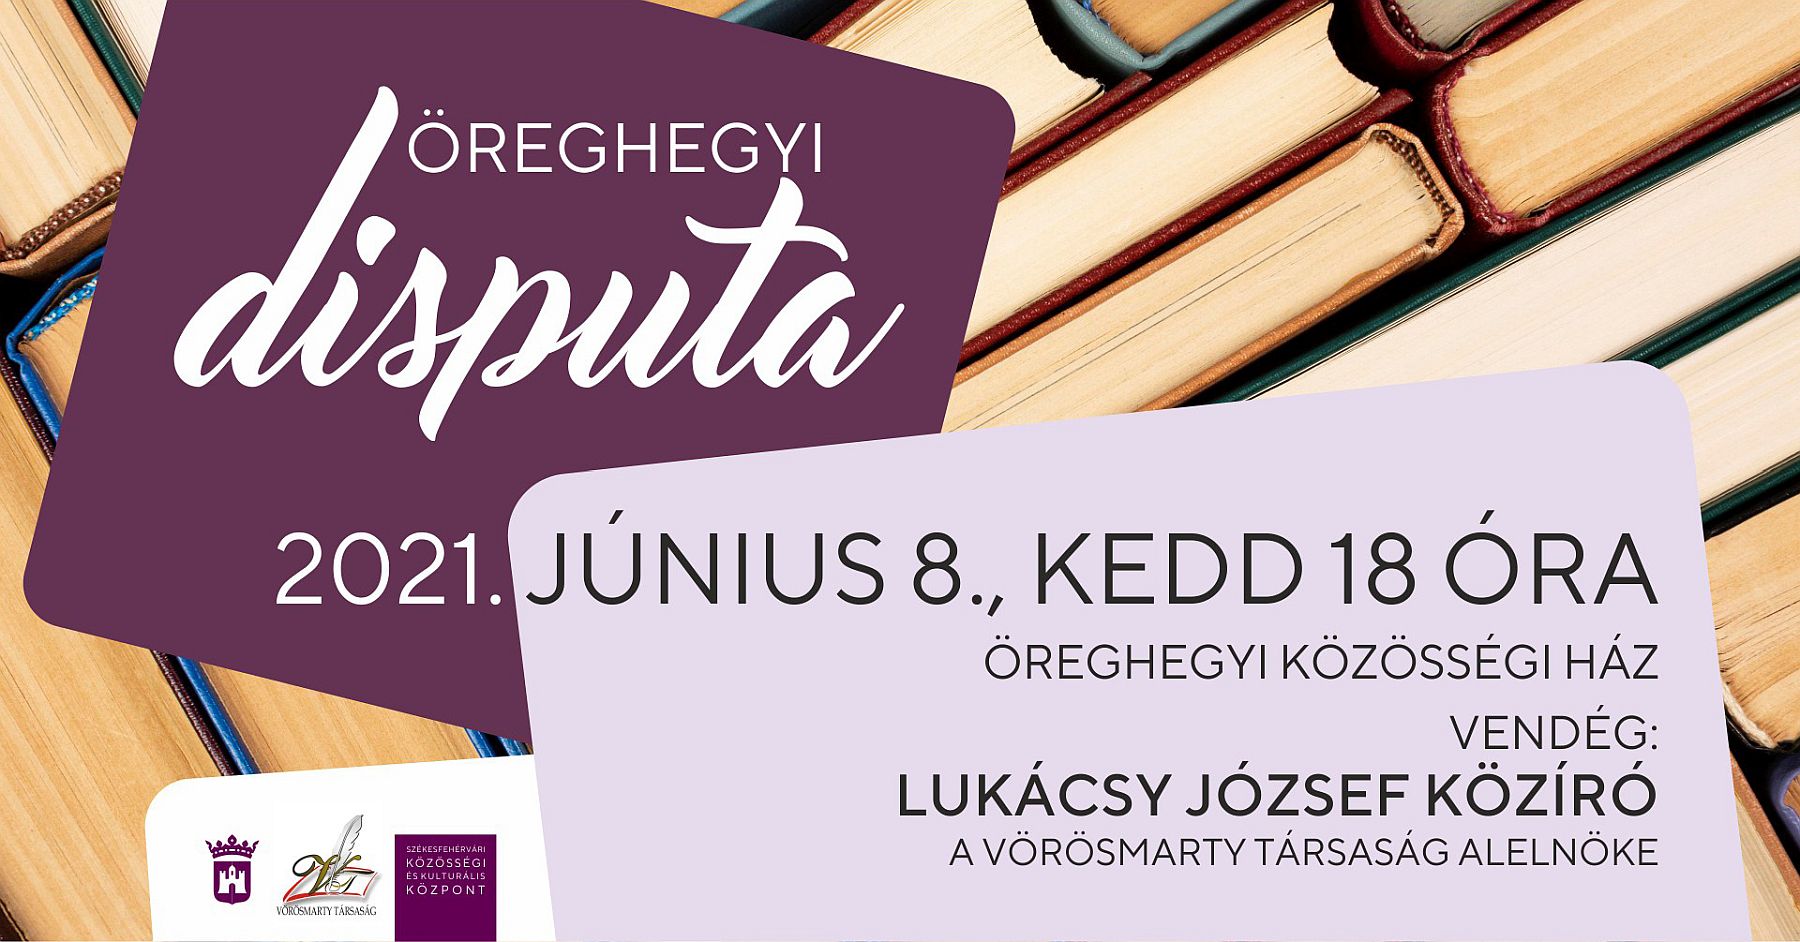 Dr. Lukácsy József közíró lesz az újrainduló Öreghegyi Disputa vendége kedden